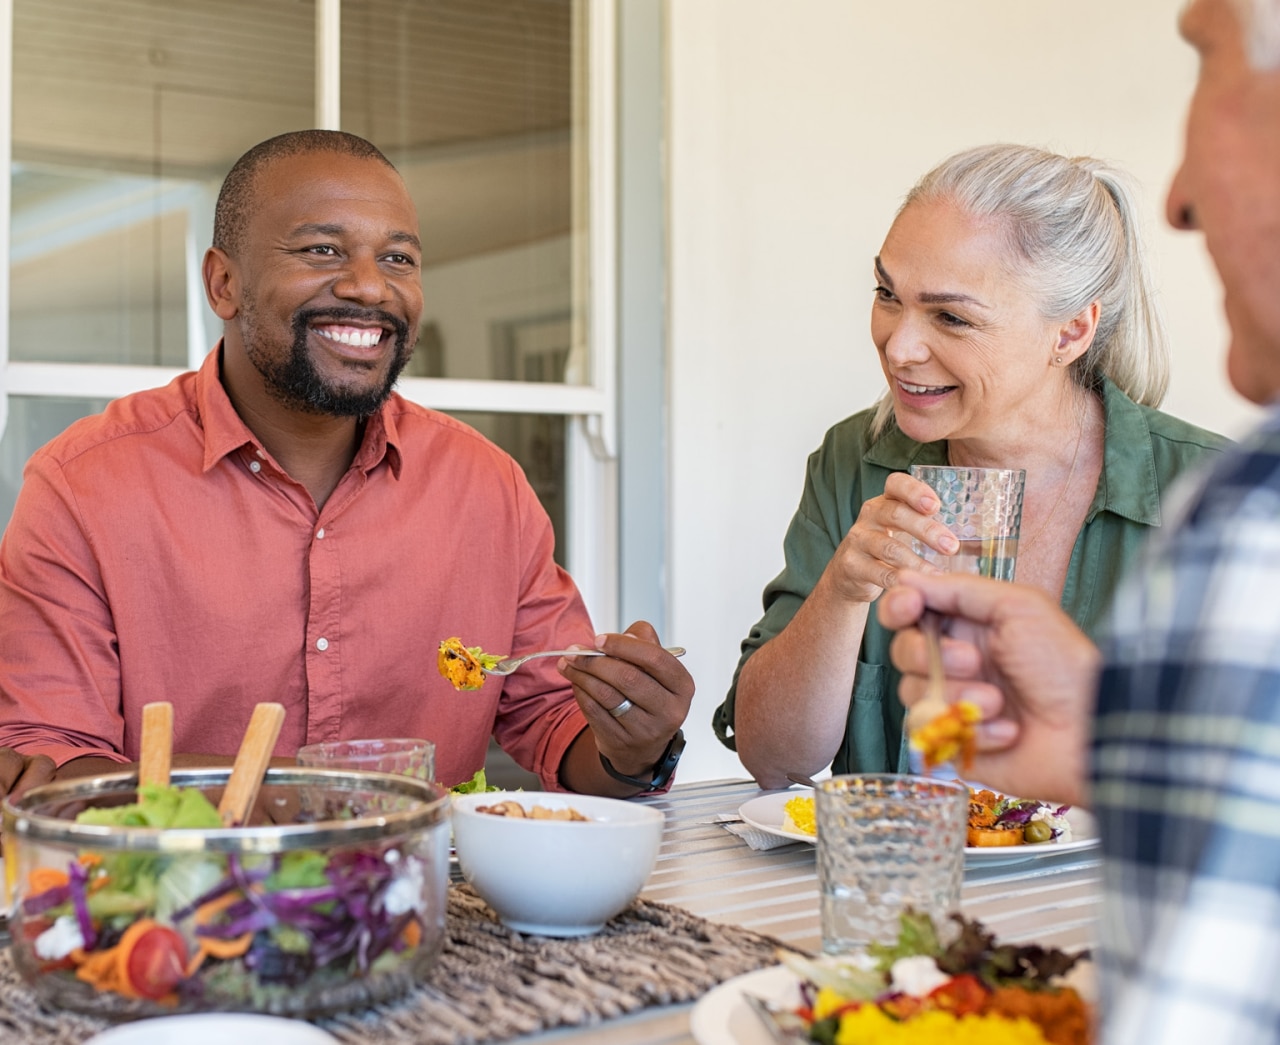 Iloiset hymyilevät ystävykset nauttimassa kotilounasta. Useista etnisyyksistä koostuva iloisten aikuisten joukko juhlimassa ja syömässä terveellistä ruokaa Kaksi vanhempaa pariskuntaa nauttimassa ateriaa samalla jutellen.